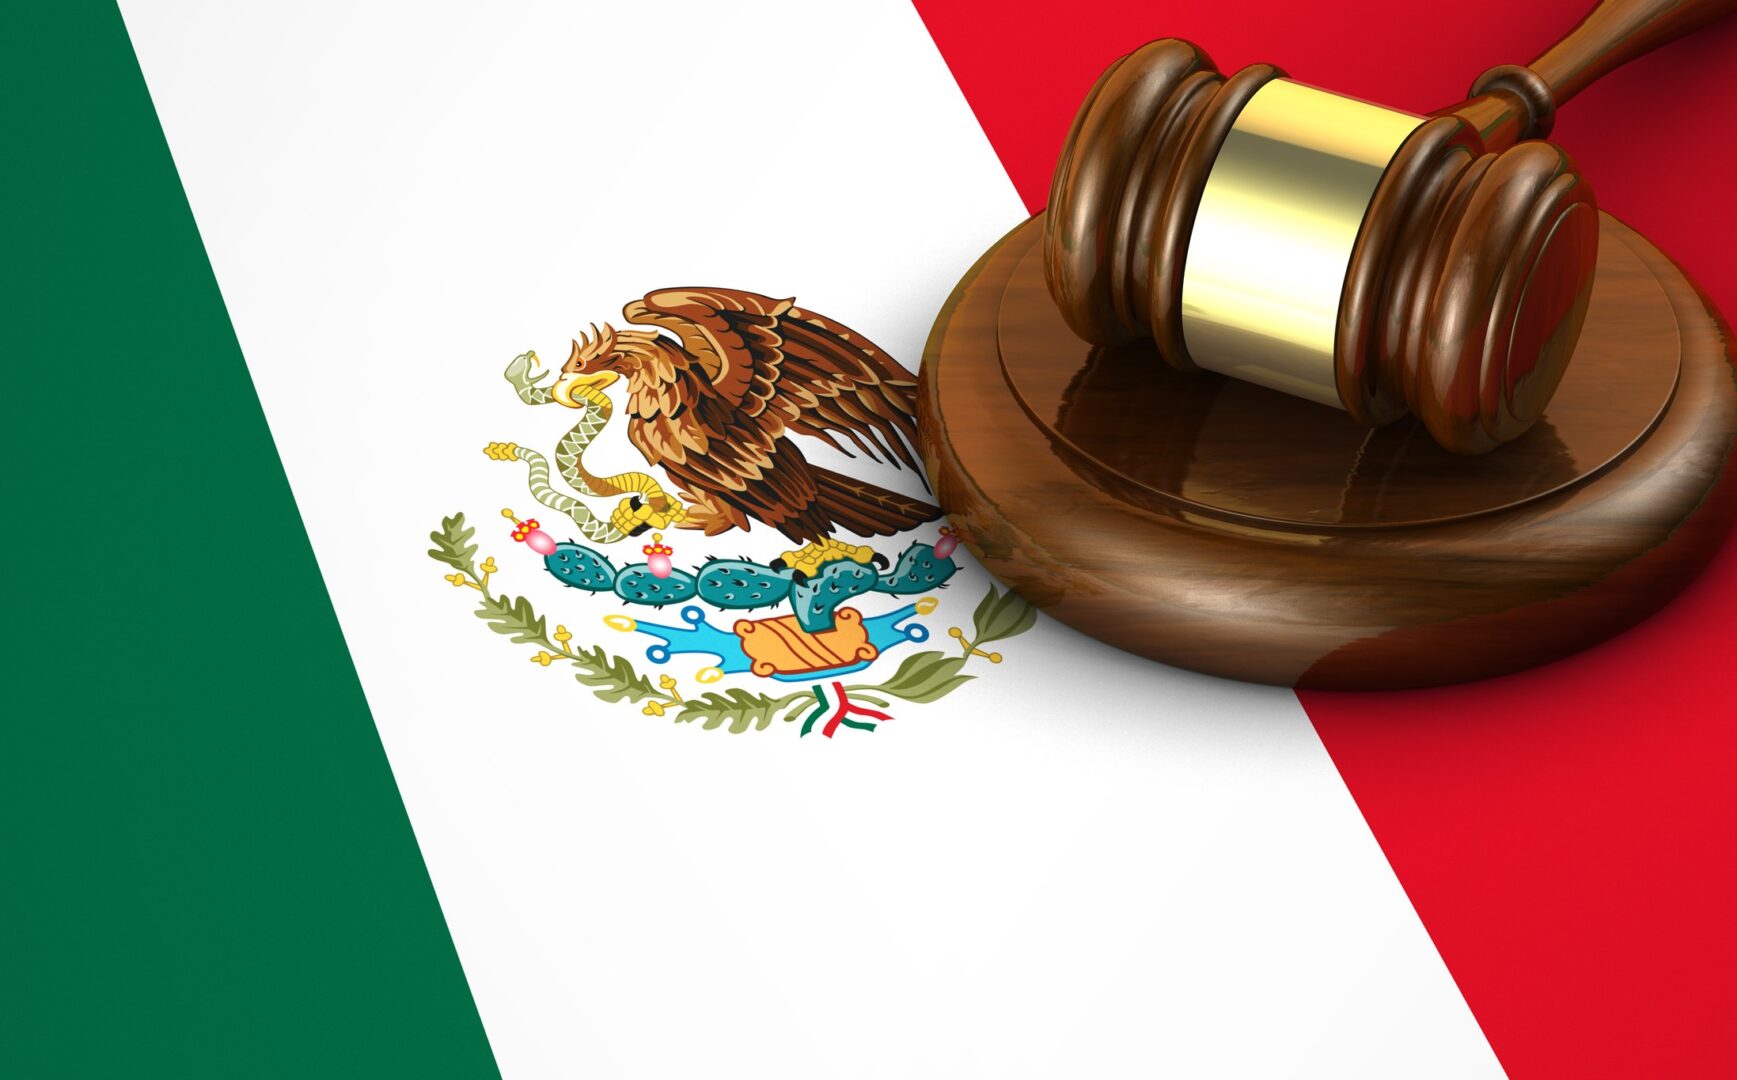 Historia del Derecho Penal en México: sucesos clave y leyes asociadas